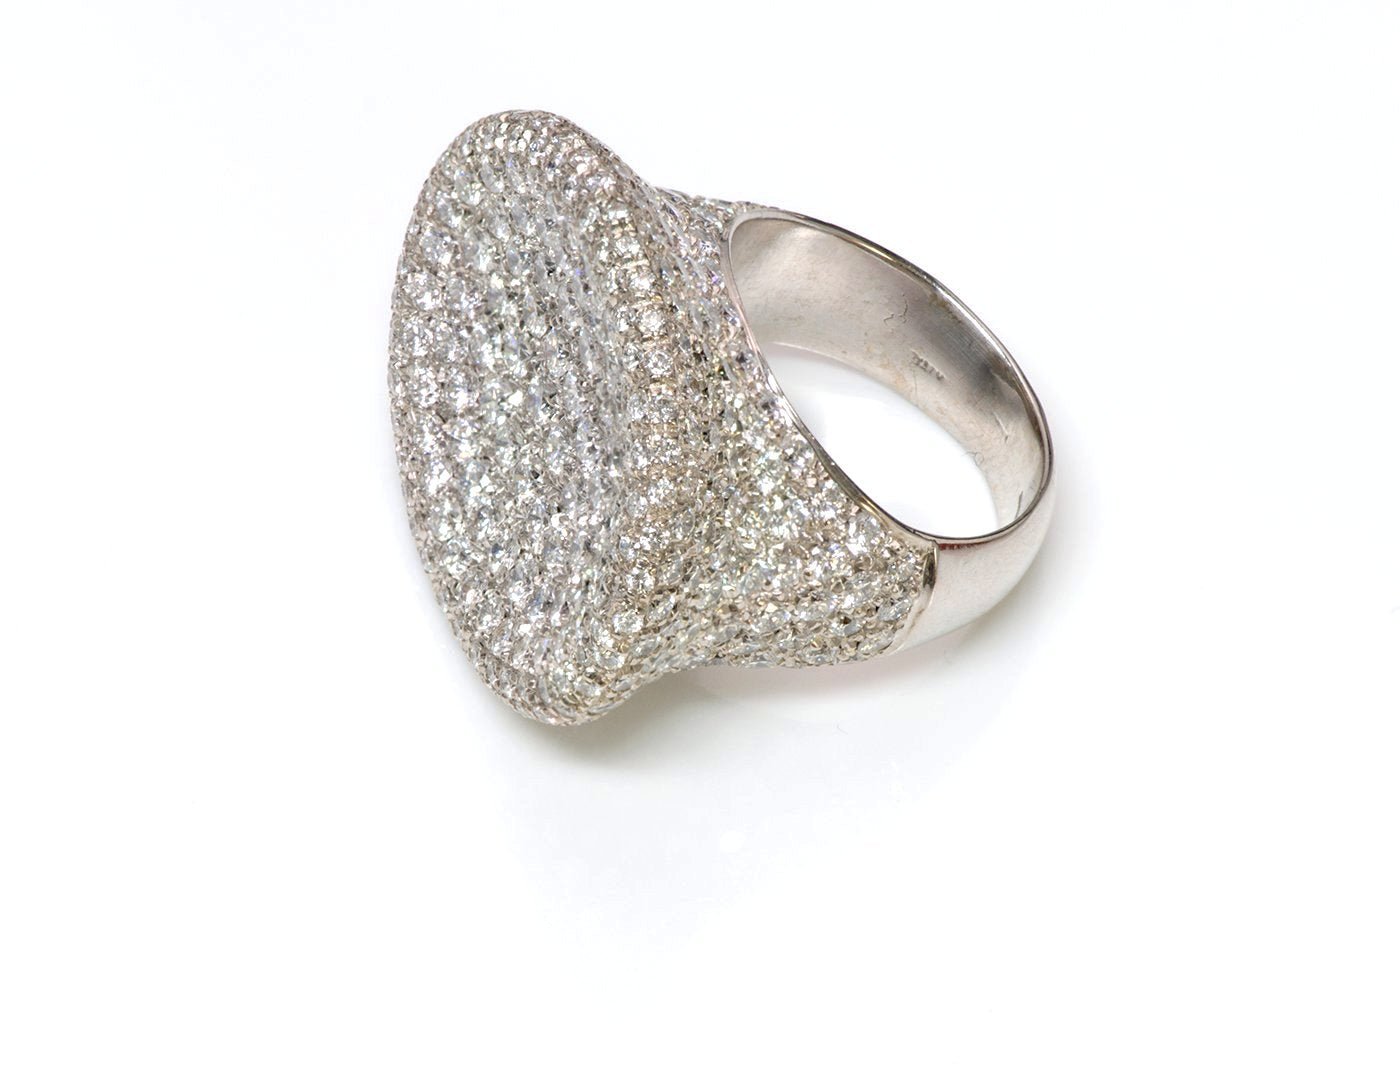 Zydo Pave Diamond 18K Gold Ring